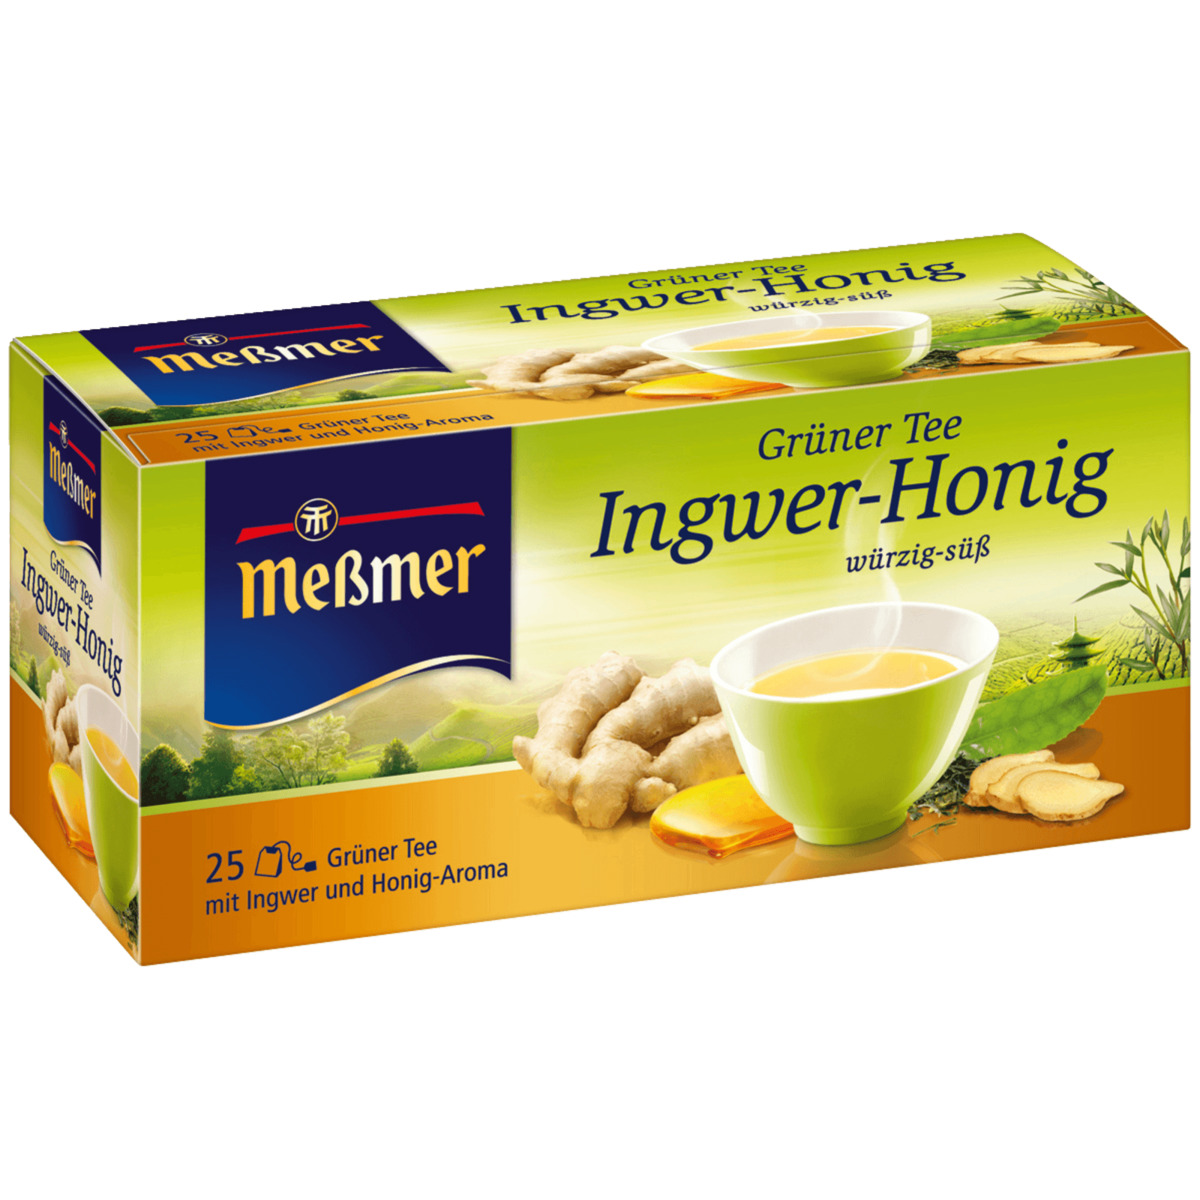 Meßmer Grüner Tee Ingwer-Honig 44g, 25 Beutel von REWE ansehen!